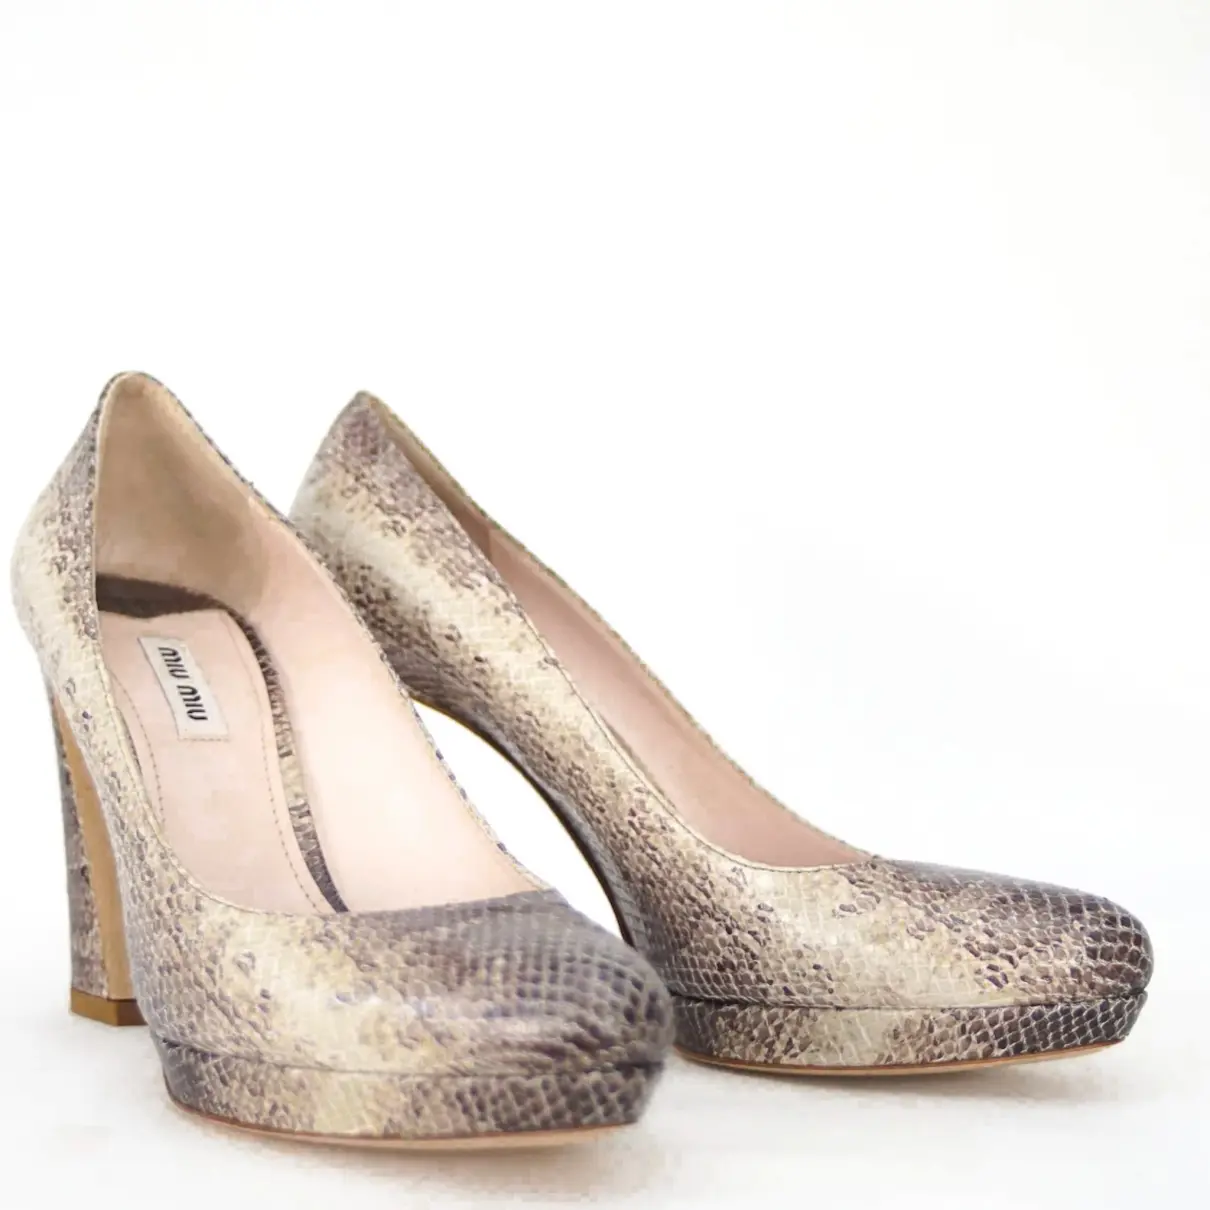 Buy Miu Miu Python heels online